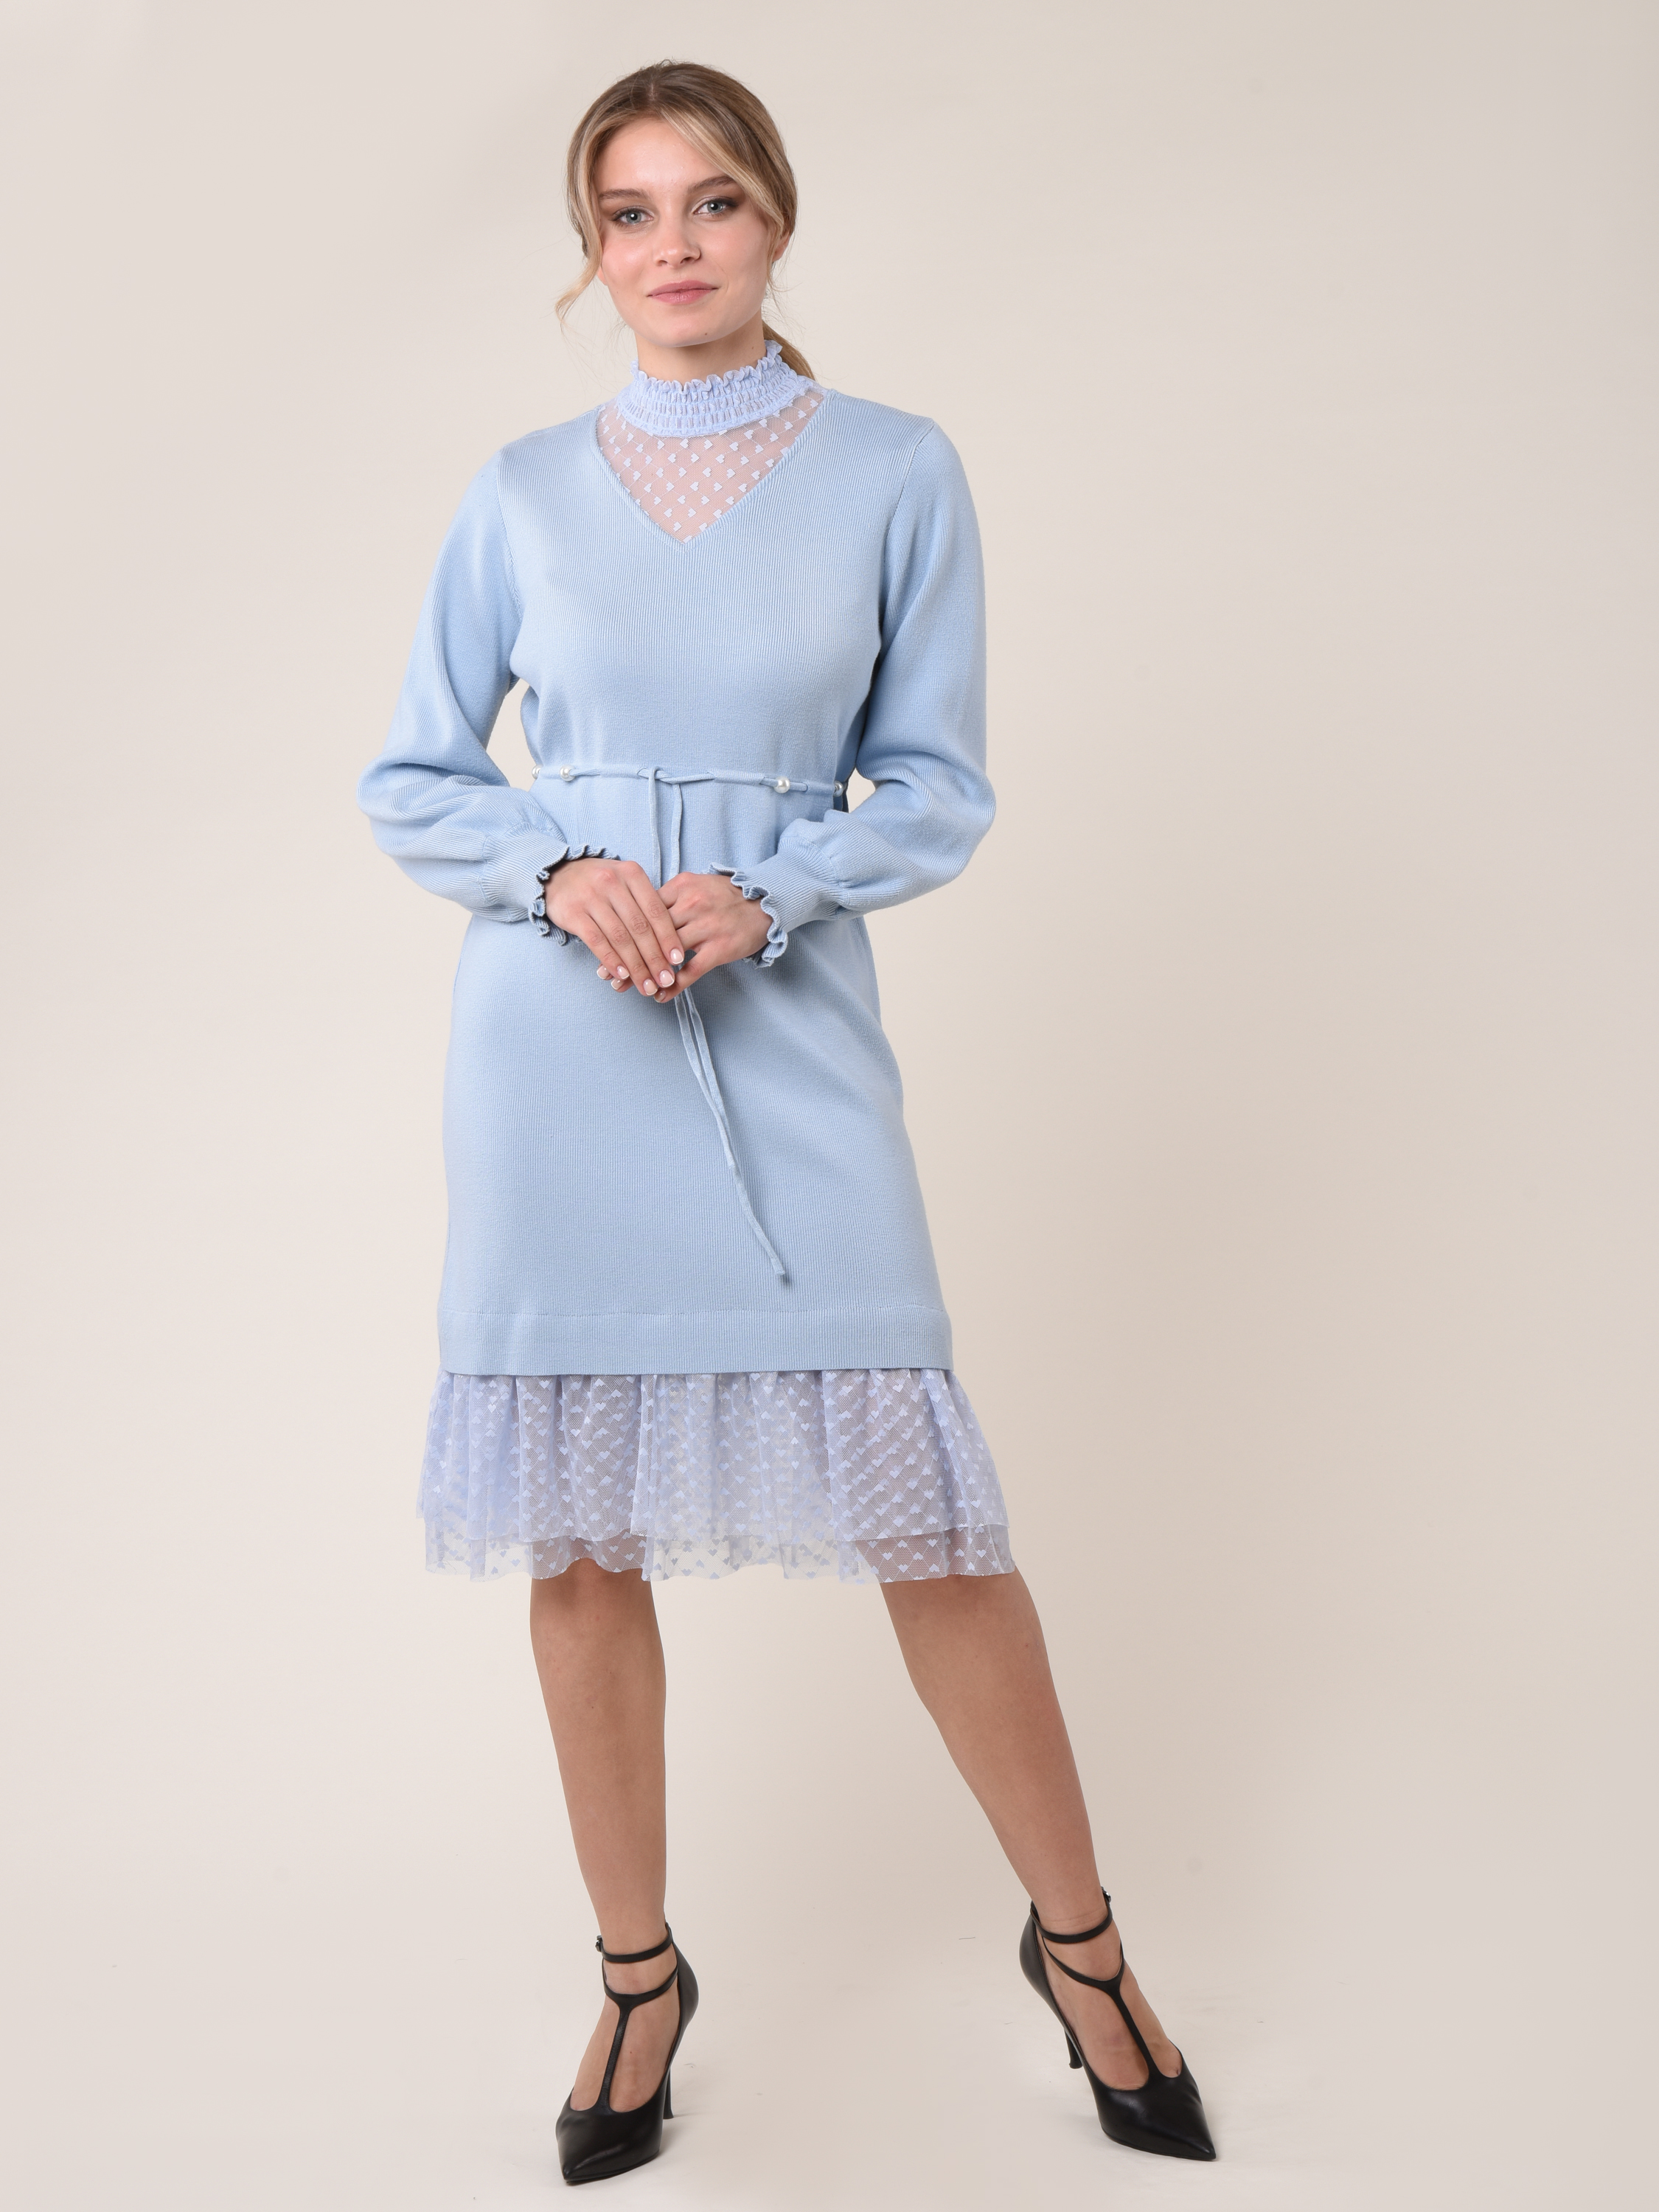 Купить Платье женское вязанное 22PLG06 голубой